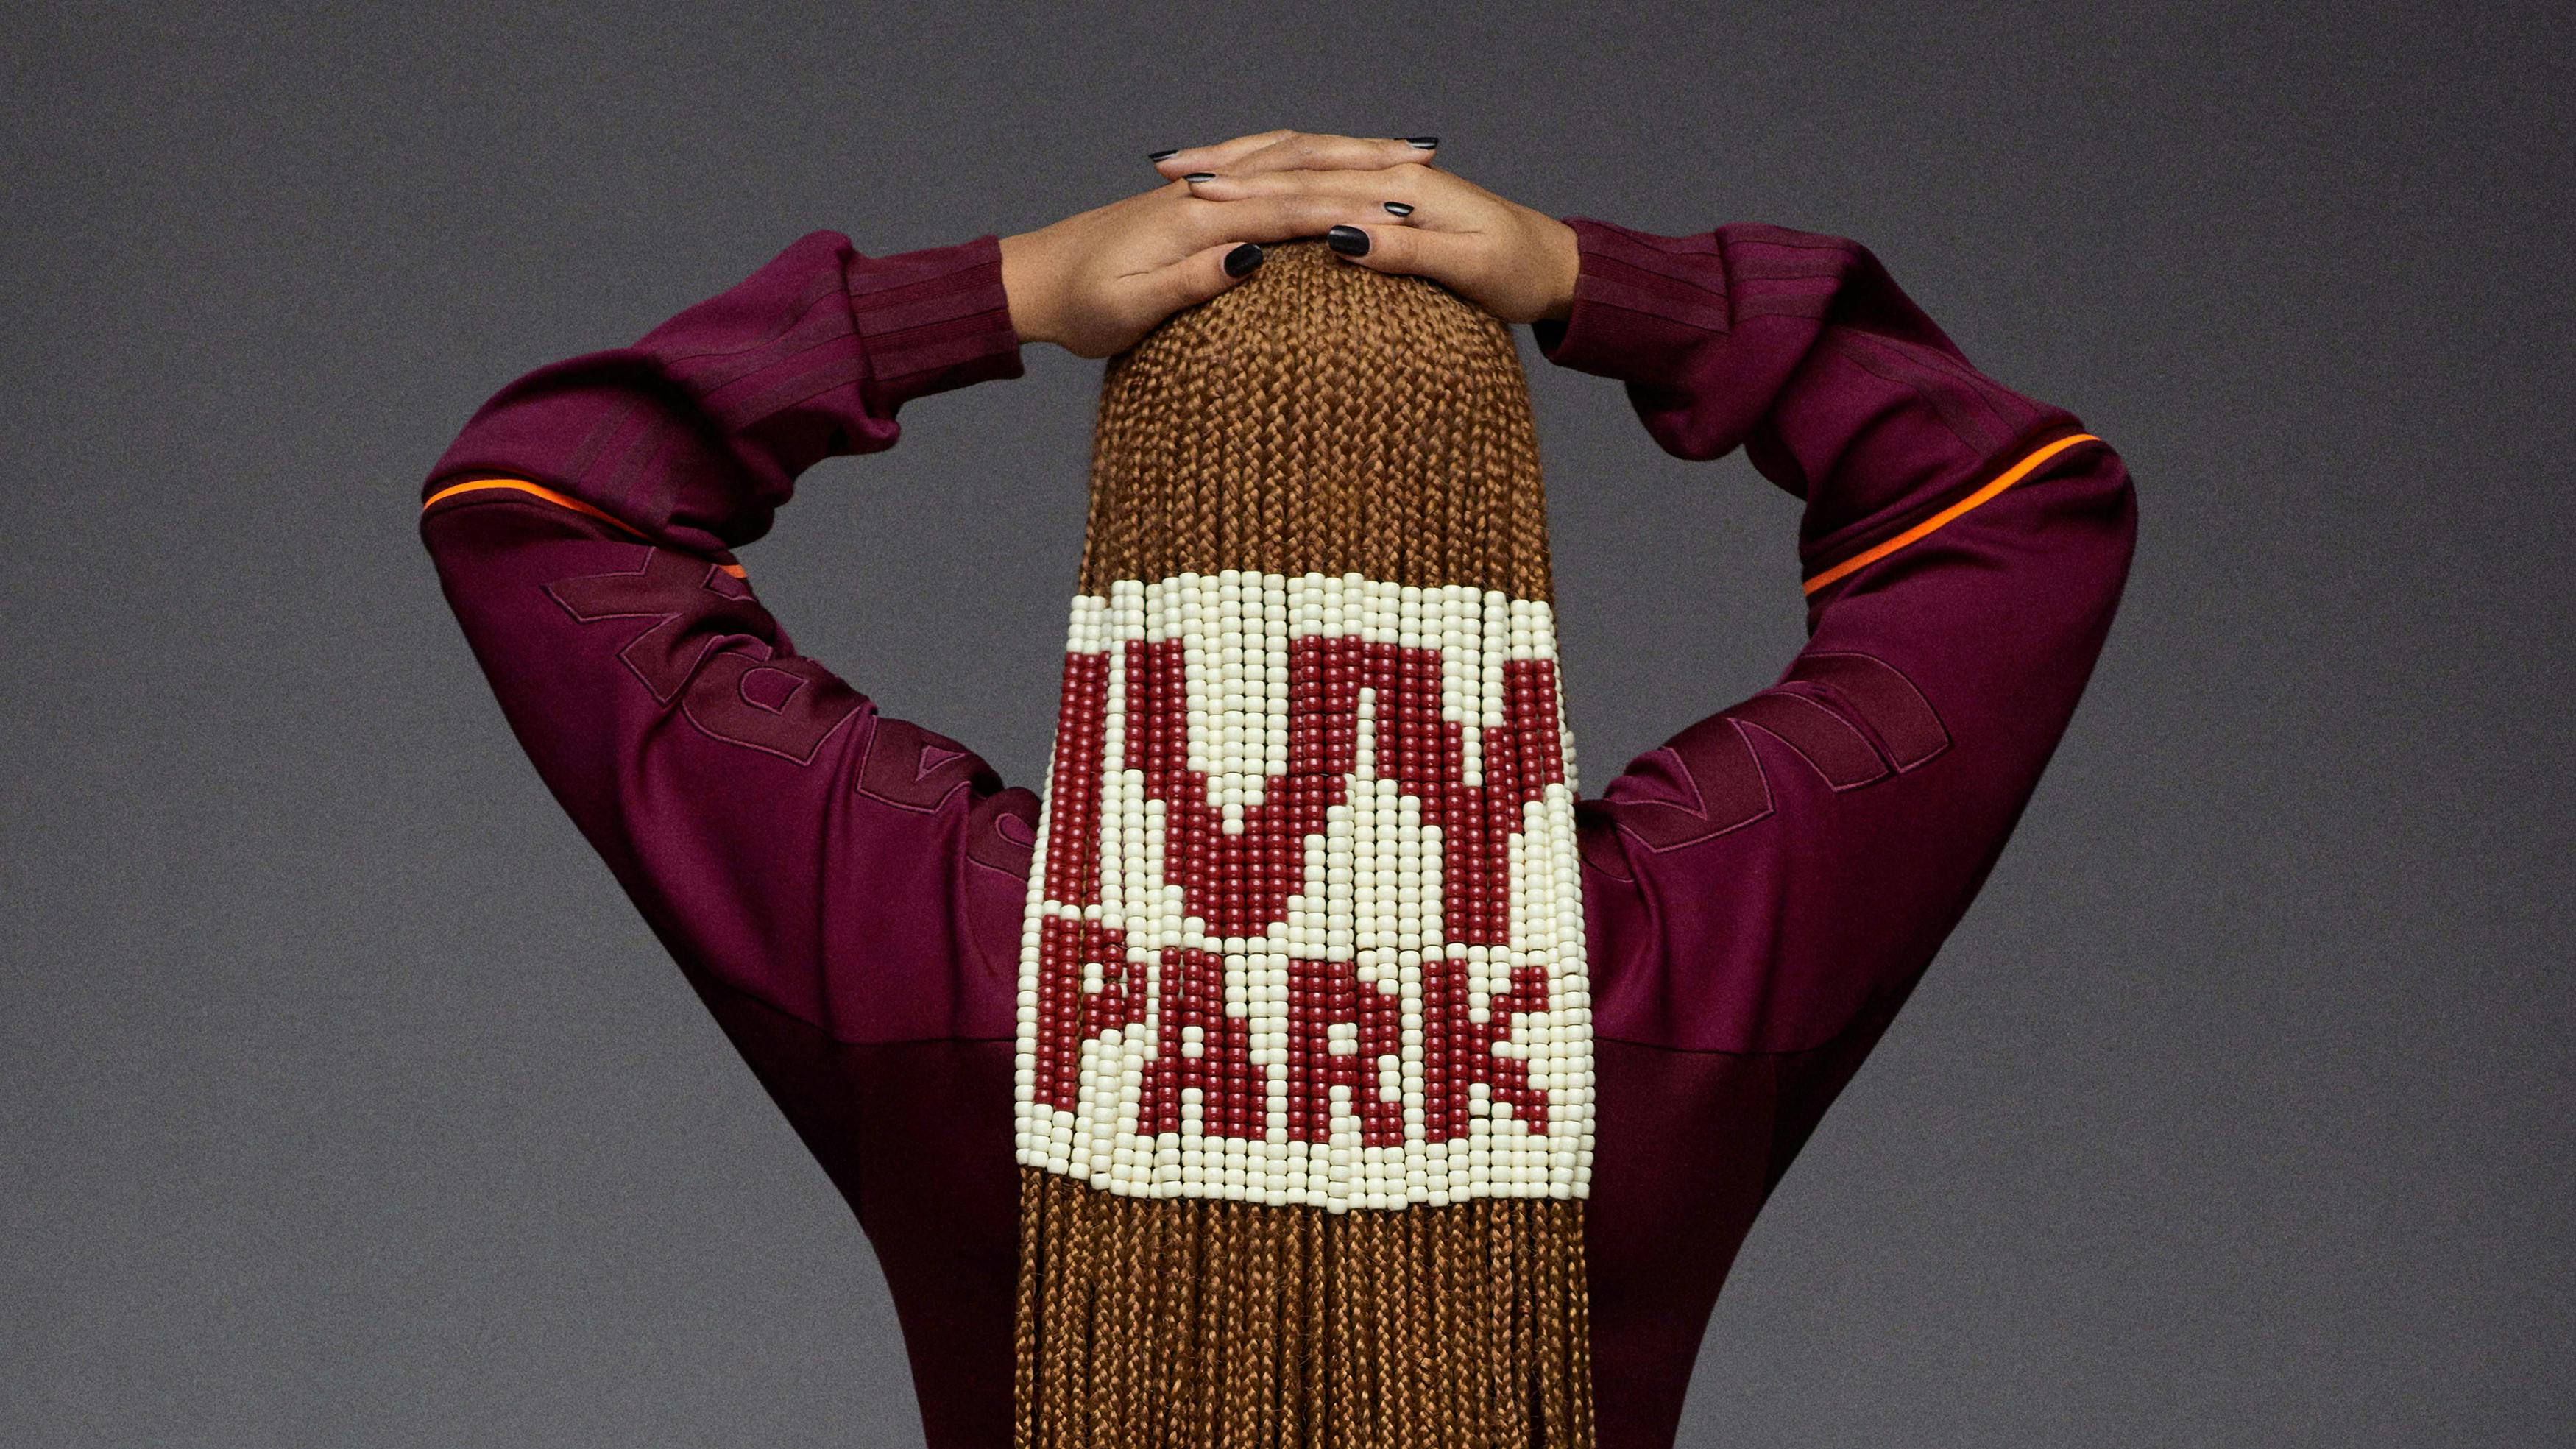 Adidas x IVY Park : Park Trail Collection Campaign. - OTSMAGAZINE